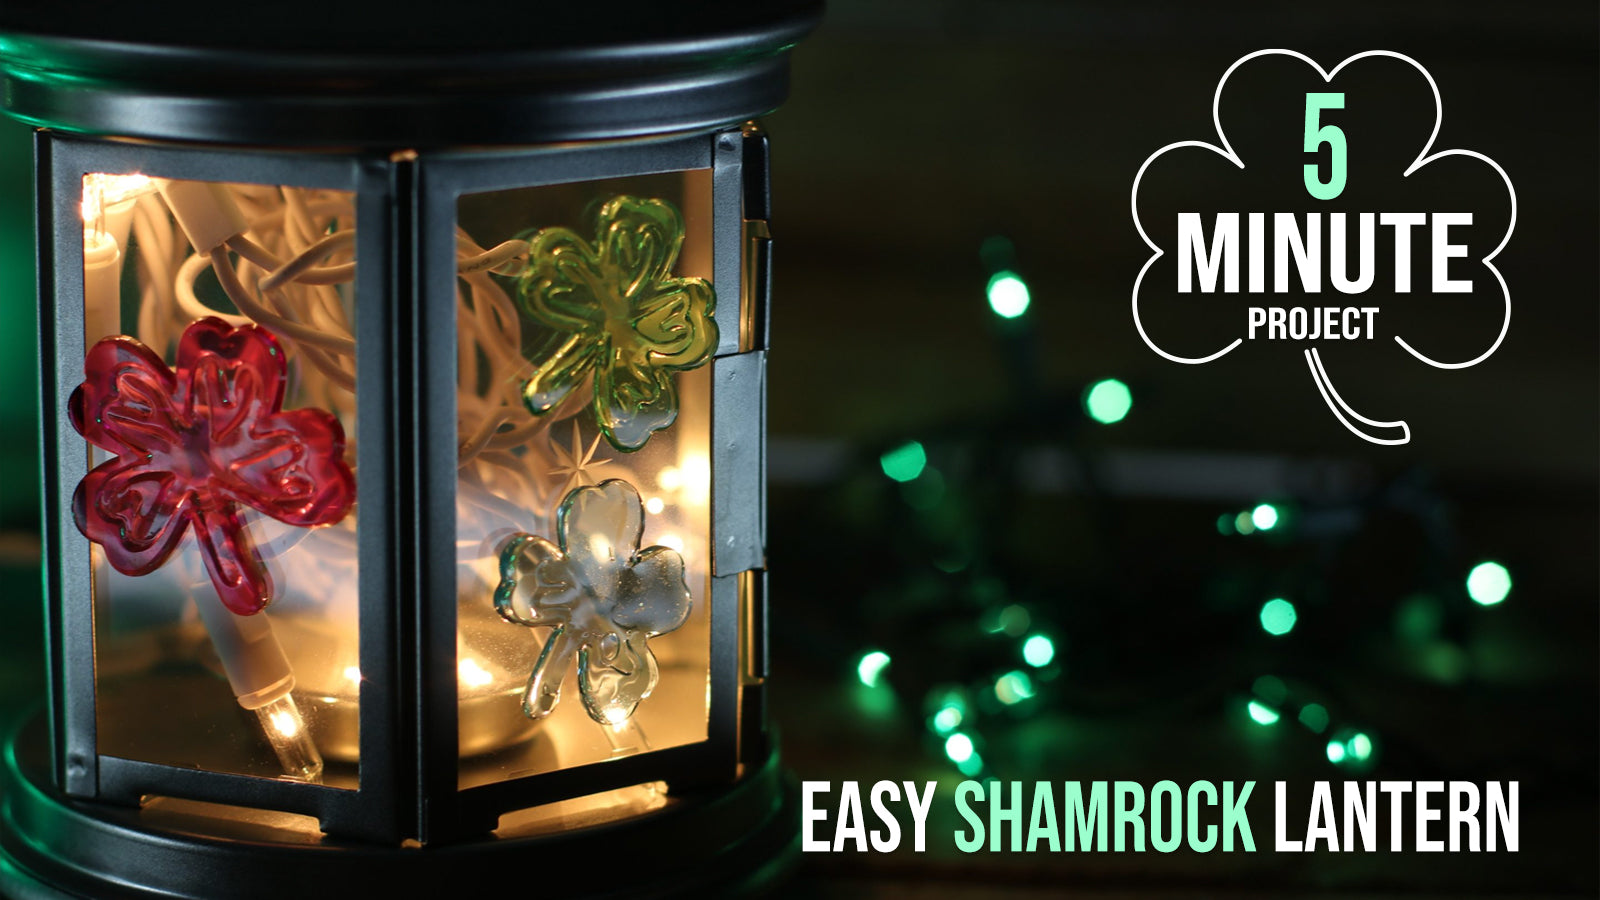 5-minute Project: Easy Shamrock Lantern